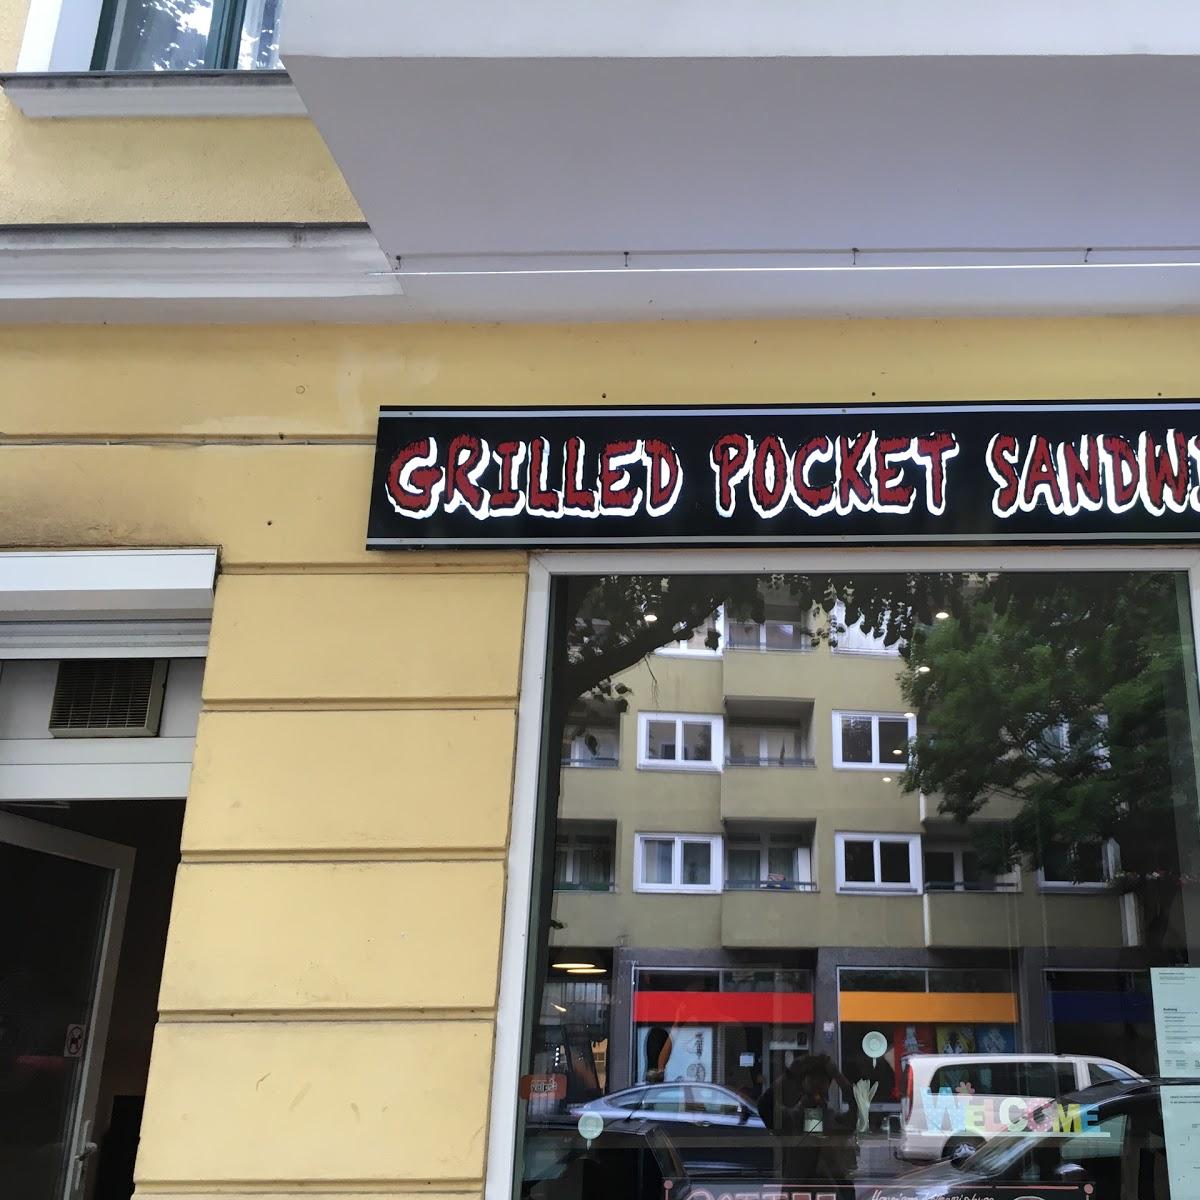 Restaurant "G.P.S Grilled Pocket Sandwich" in Berlin